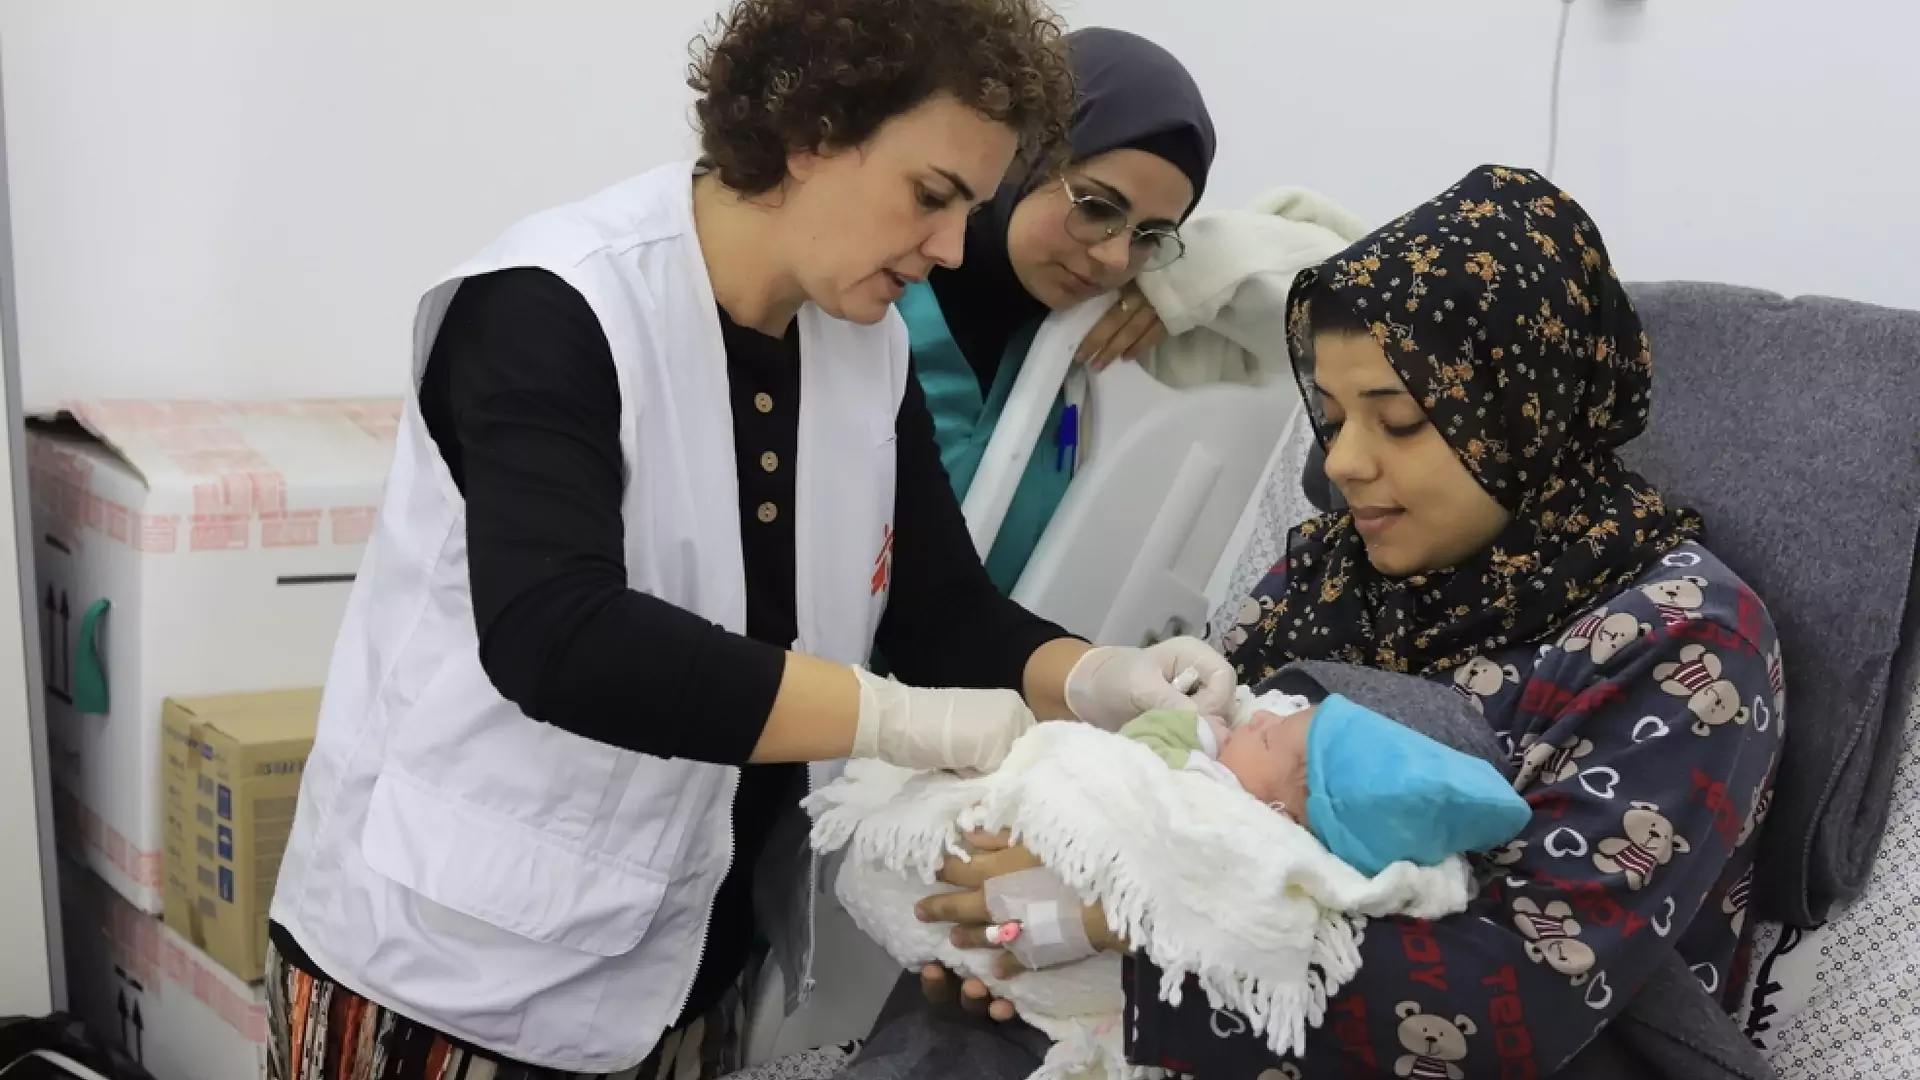 Brakuje miejsca w szpitalach, kobiety rodzą w namiotach. Krytyczna sytuacja w Strefie Gazy